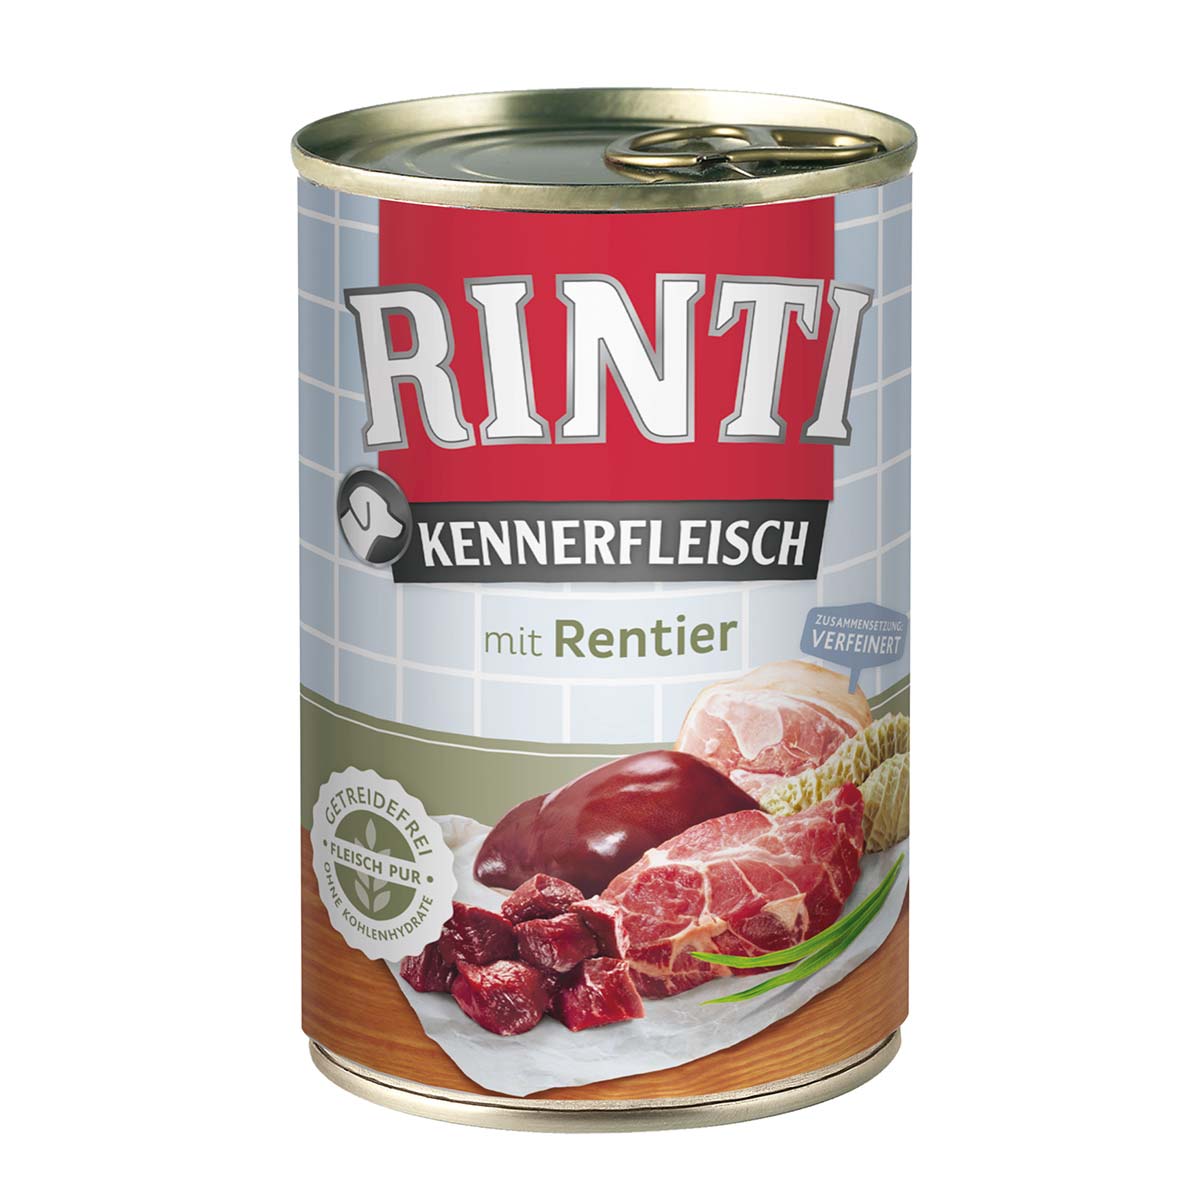 Rinti Kennerfleisch mit Rentier 12x400g